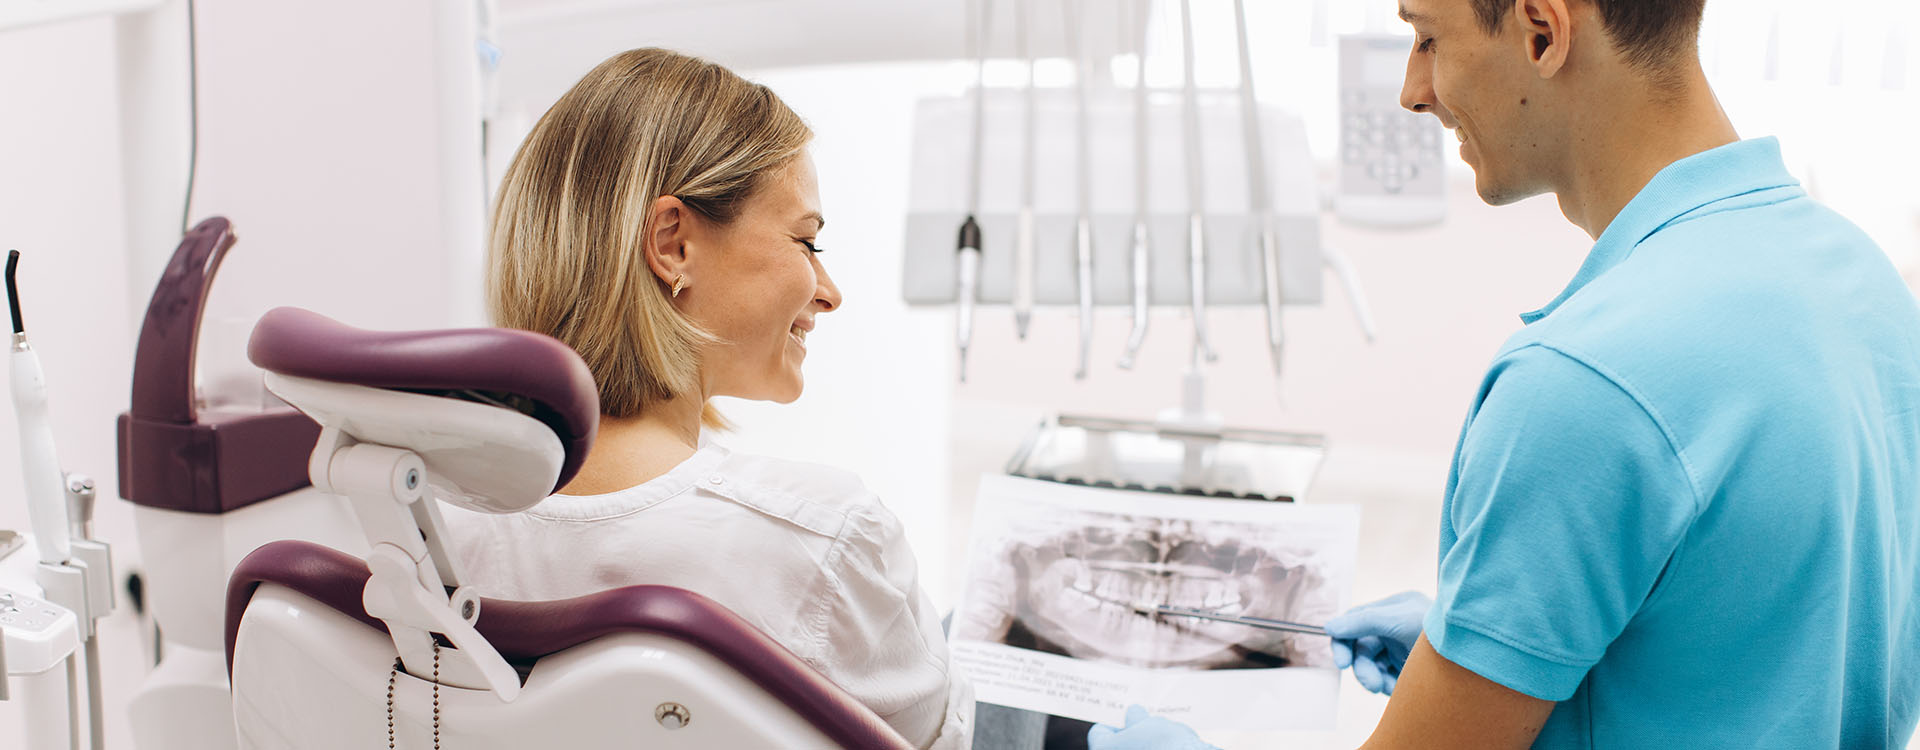 Clínica Dental Andrea Compte, tu Centro Odontológico especializado. Enfermedad periodontal en Traiguera. Dentista mostrando una radiografía a la paciente.